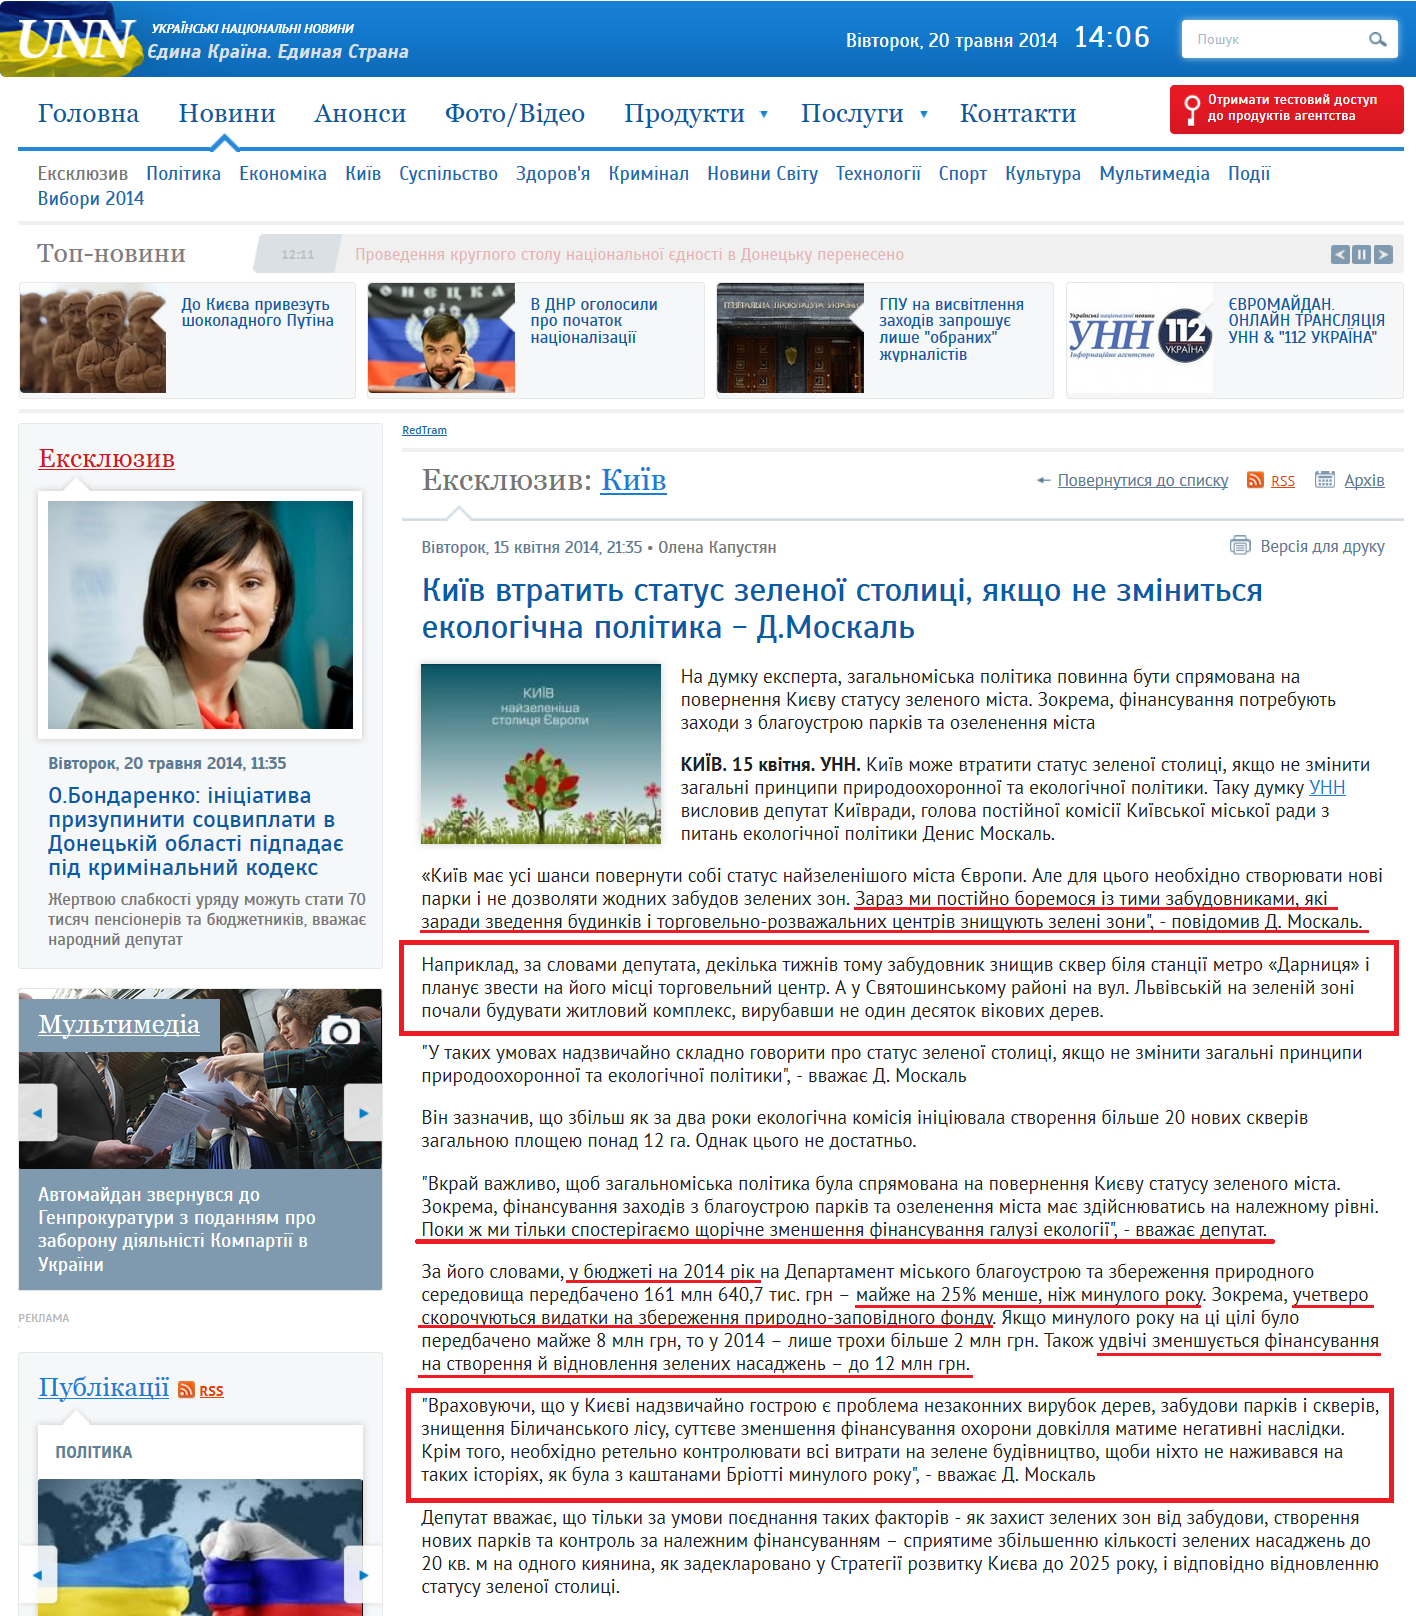 http://www.unn.com.ua/uk/exclusive/1331679-kiyiv-vtratit-status-zelenoyi-stolitsi-yakscho-ne-zminitsya-ekologichna-politika-d-moskal